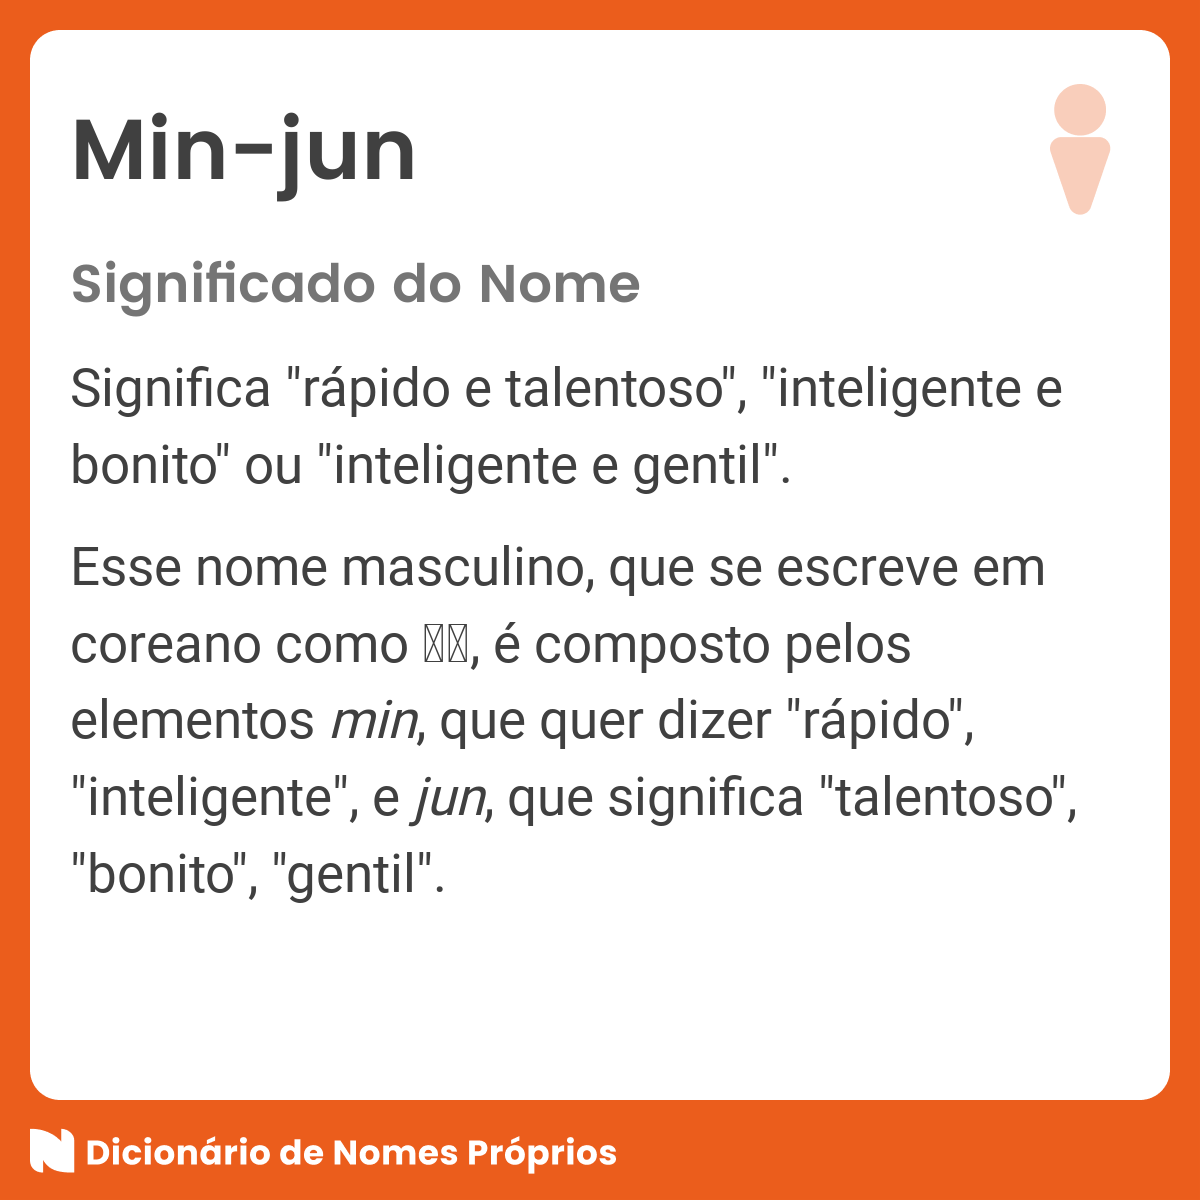 Significado do nome Min-jun - Dicionário de Nomes Próprios